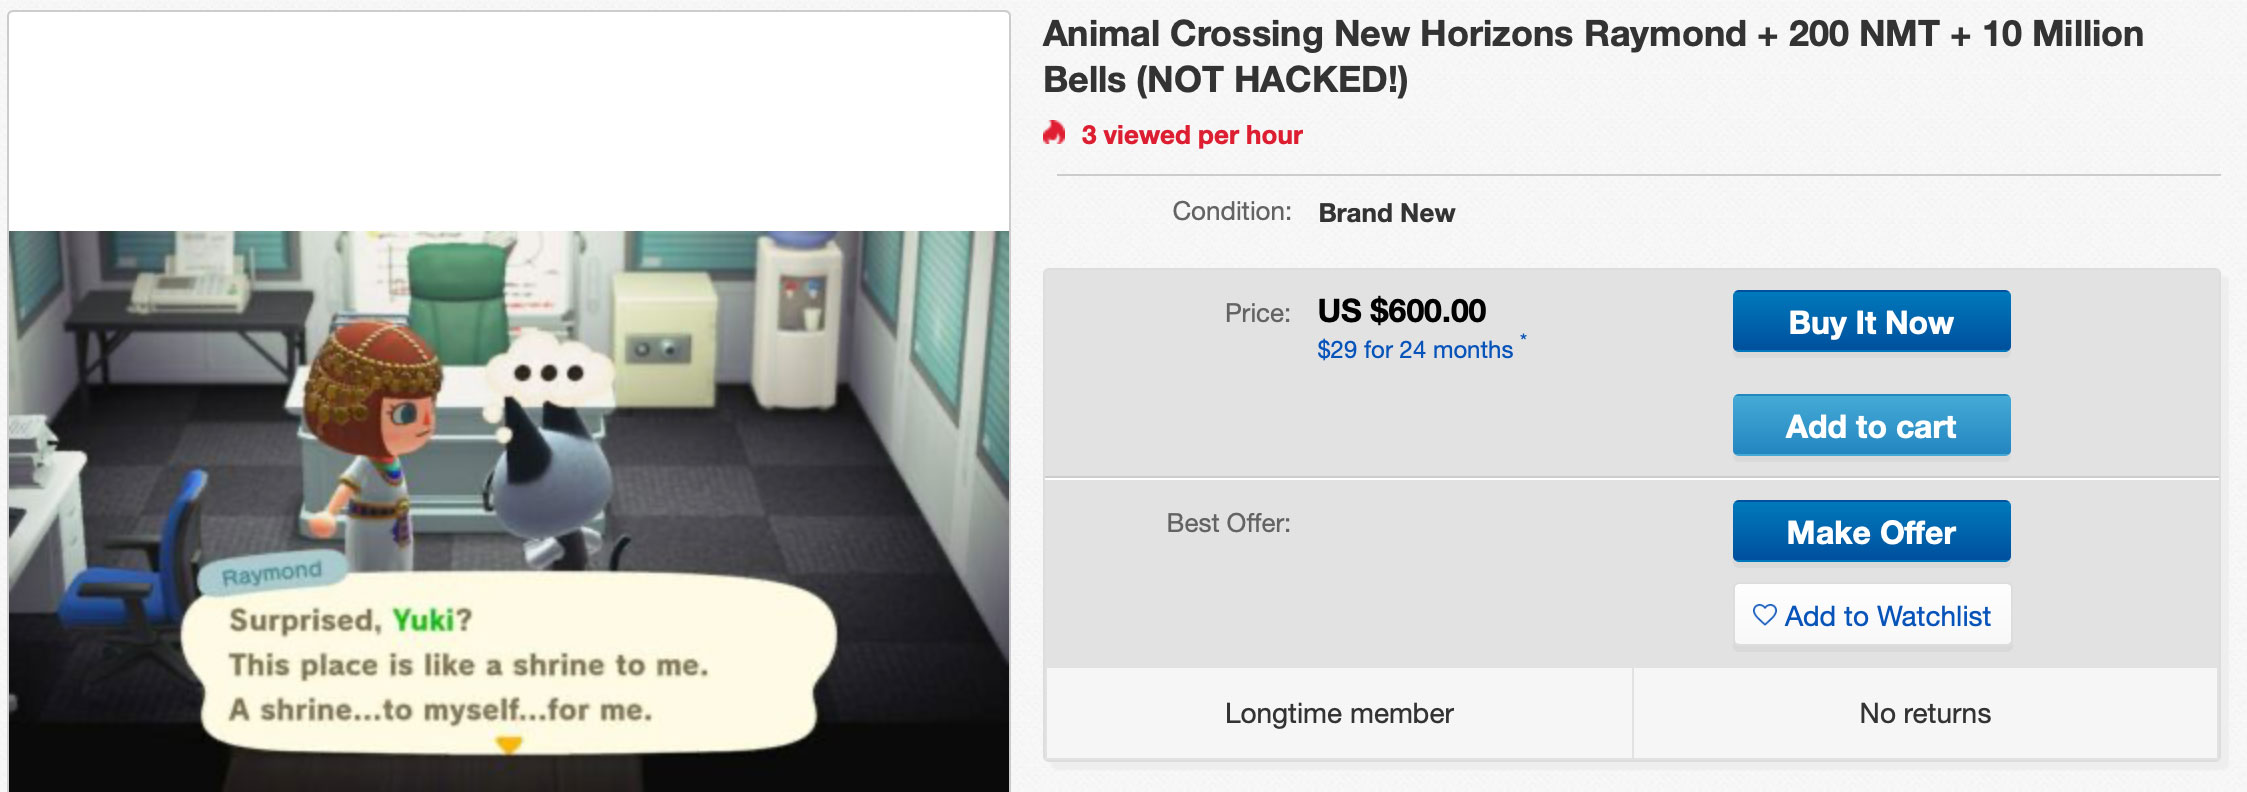 Animal Crossing: New Horizons Raymond